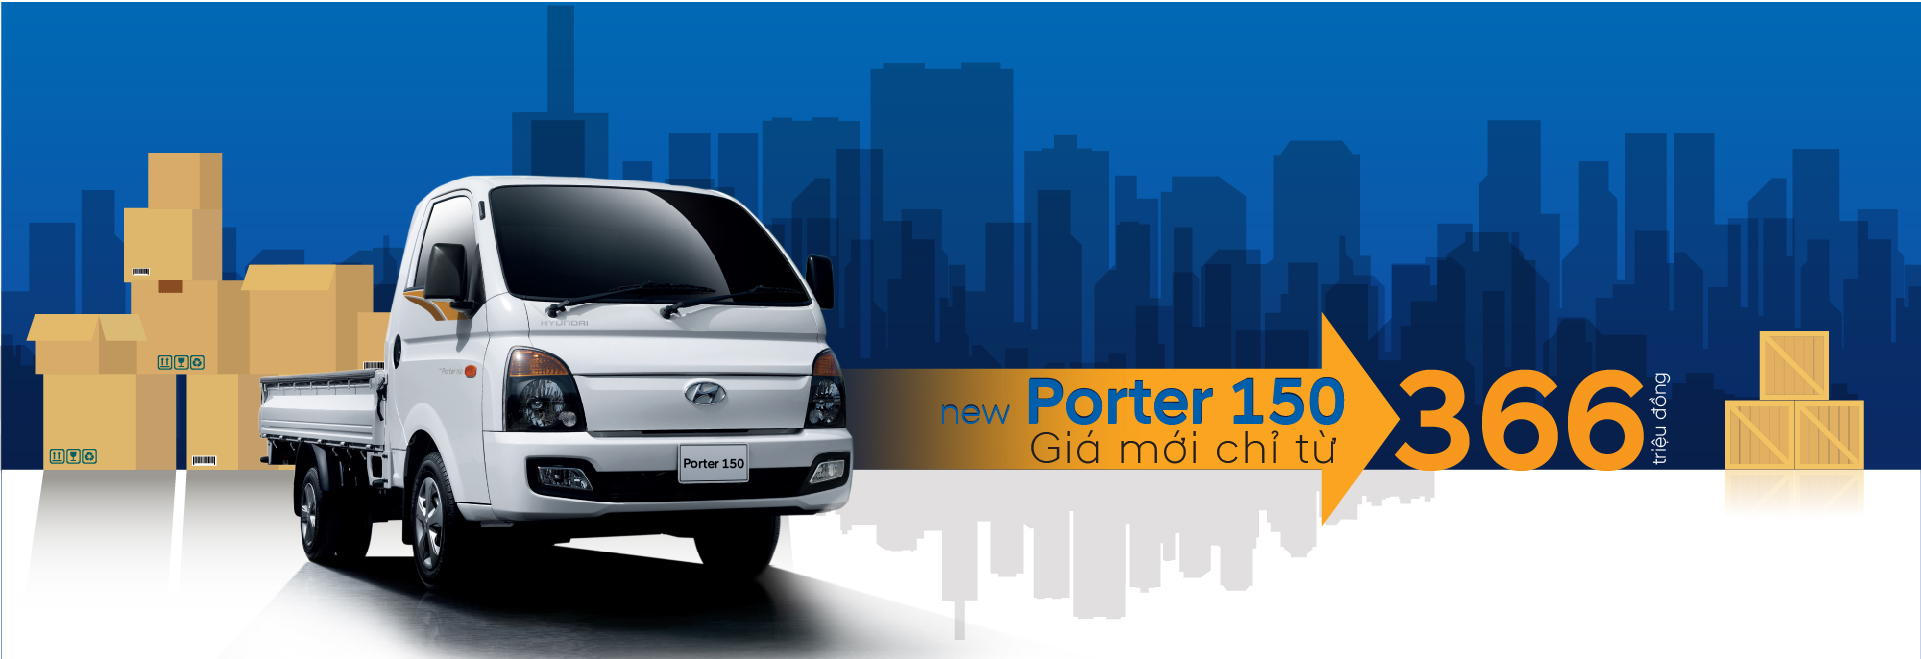 Hyundai Porter 150 Thành Công